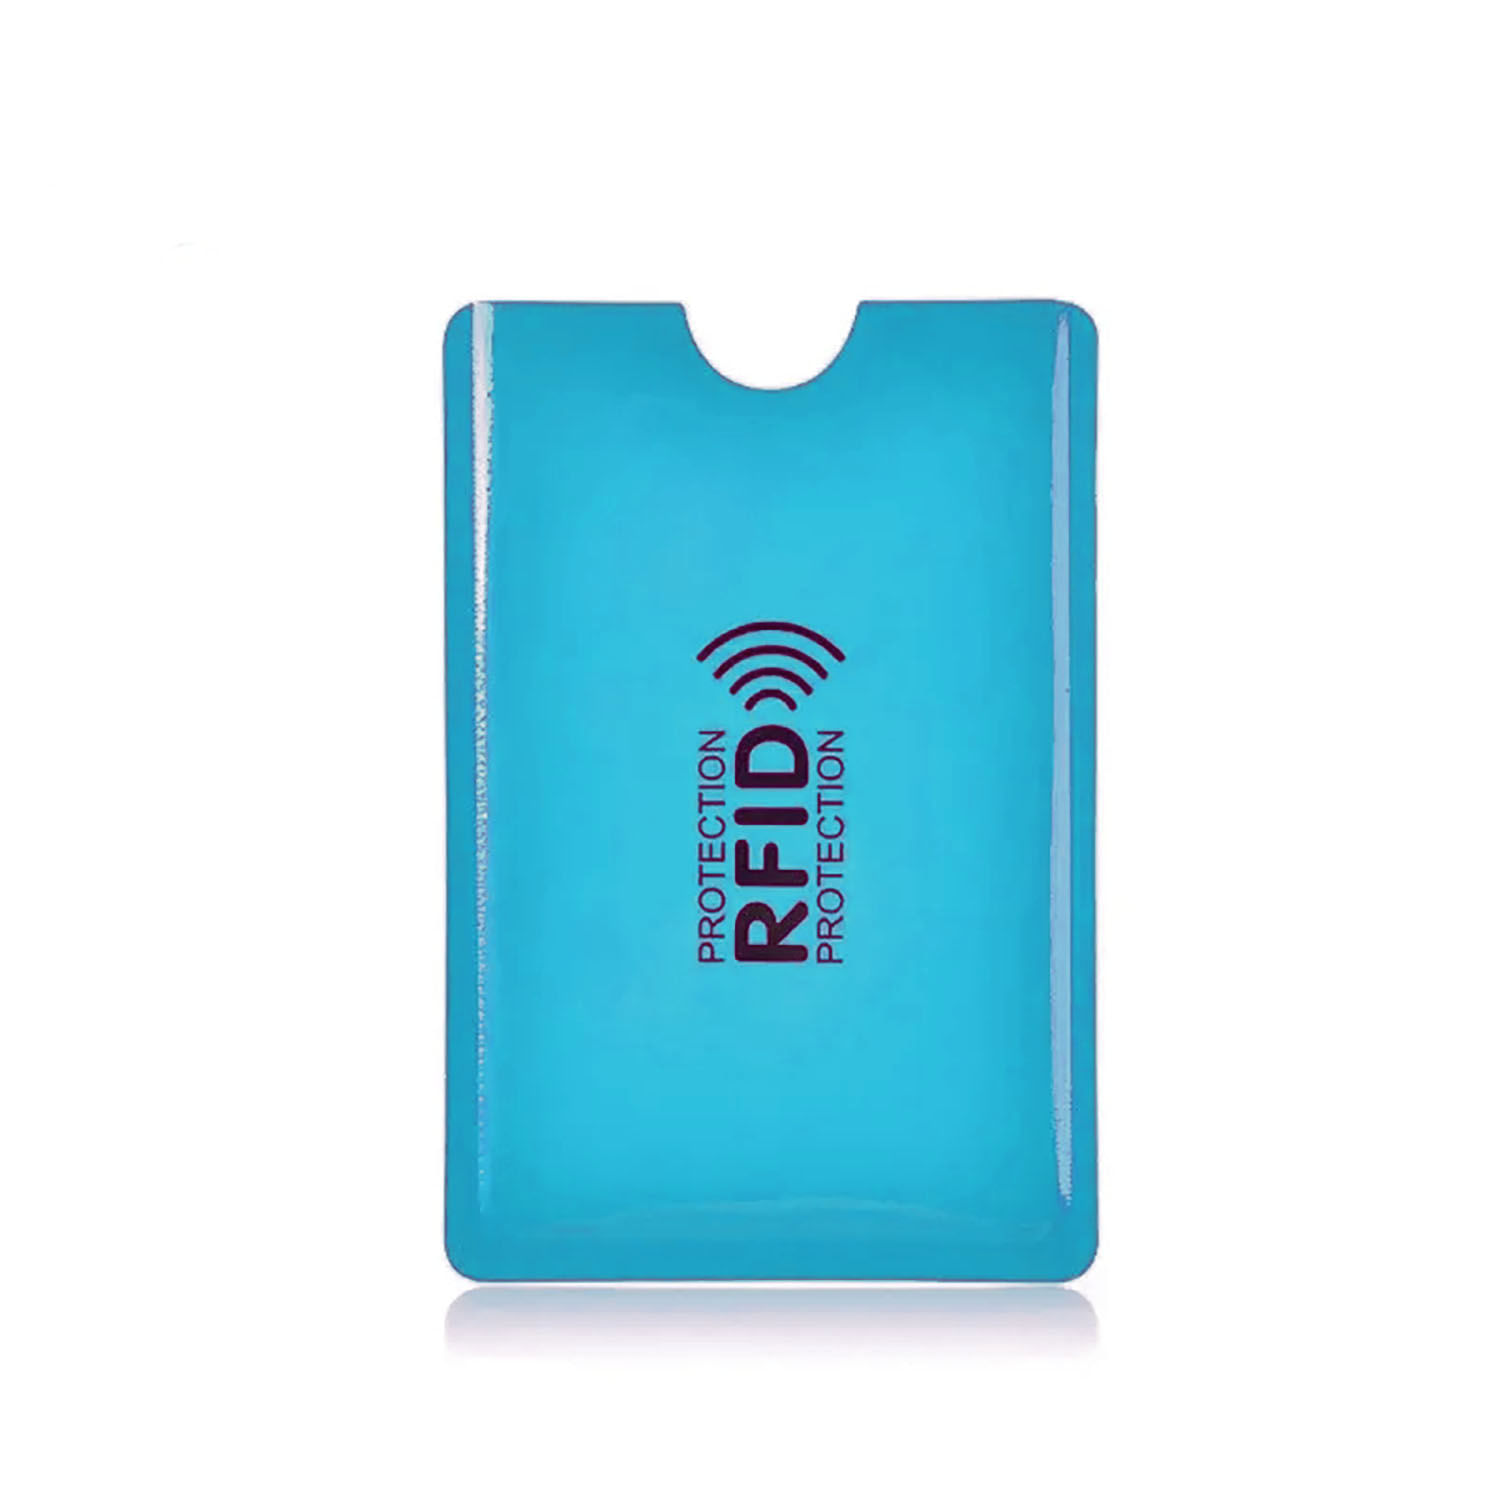 Funda Protectora de Tarjeta Crédito RFID Antirobo Pack 3 Piezas Azul